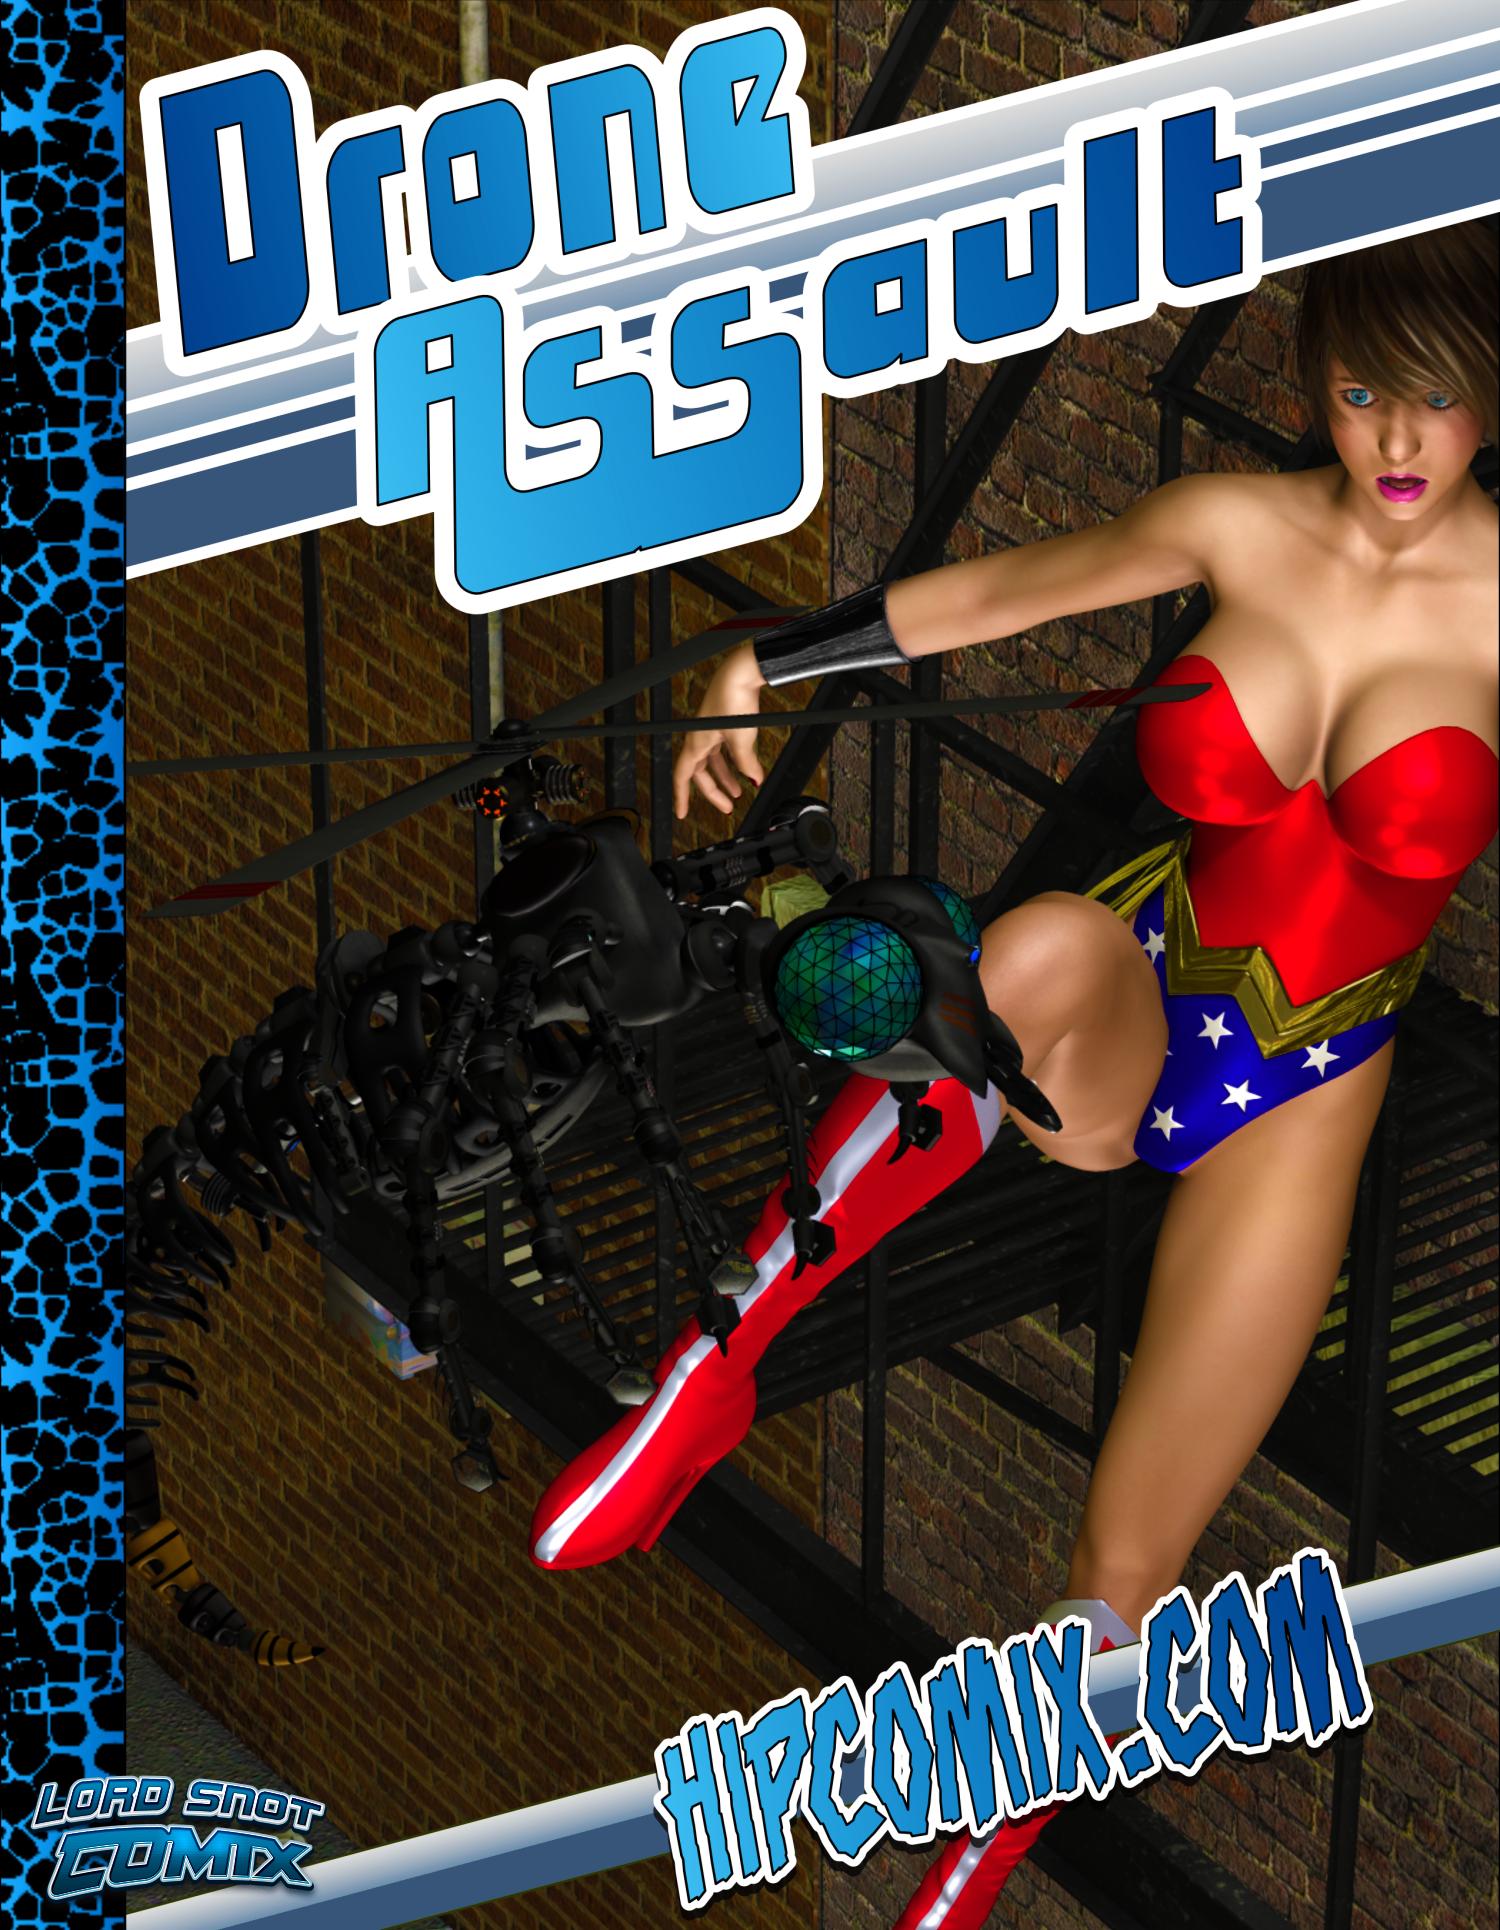 Supergirl Page 5 Porn Comics And Sex Games Svscomics